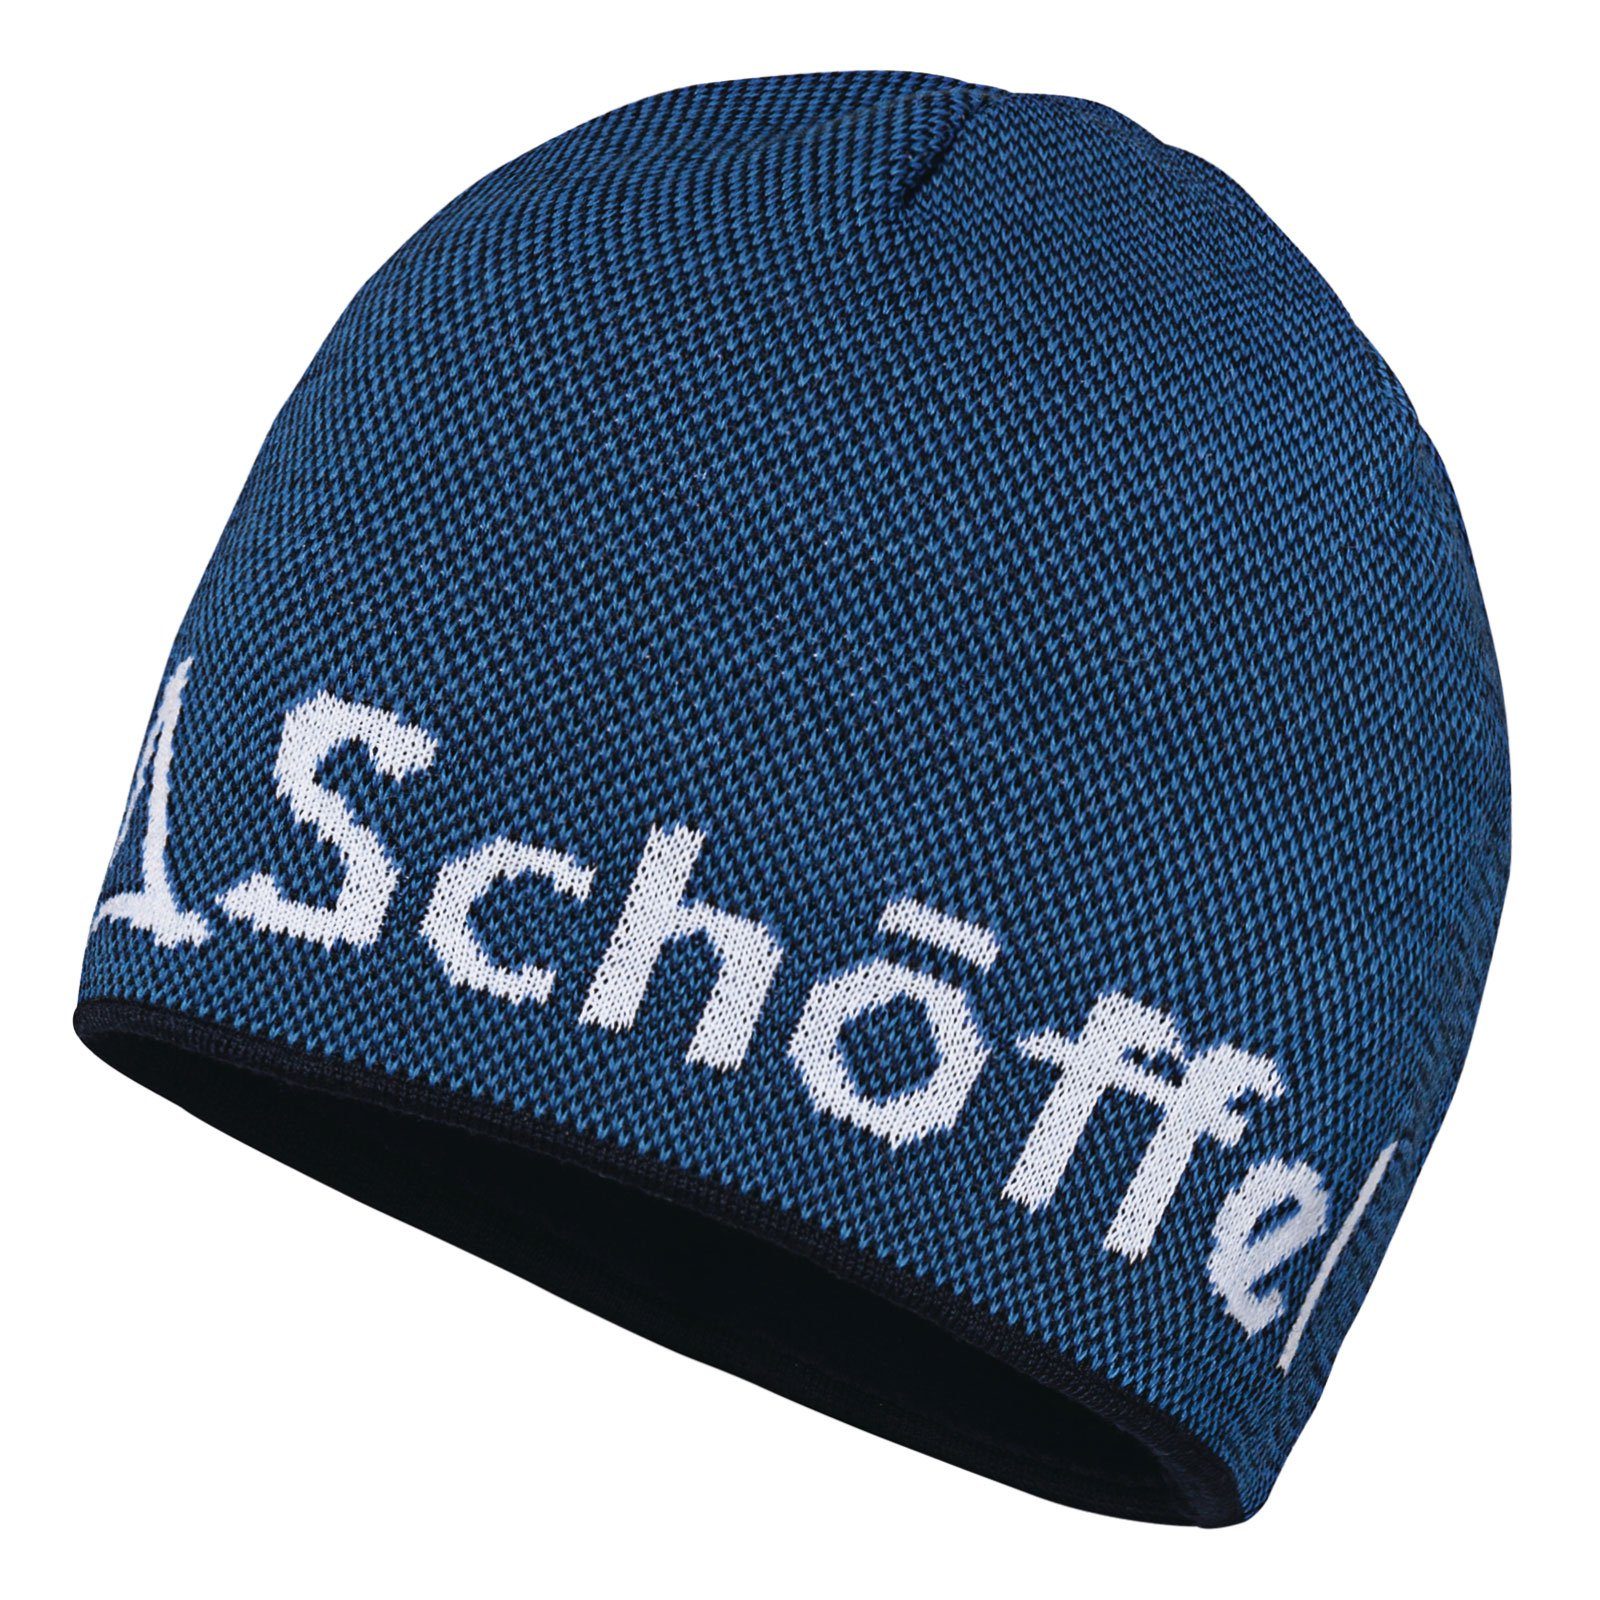 Schoeffel Schöffel Strickmütze Knitted Hat 8320 Schöffel-Logo directoire Klinovec mit eingestricktem blue